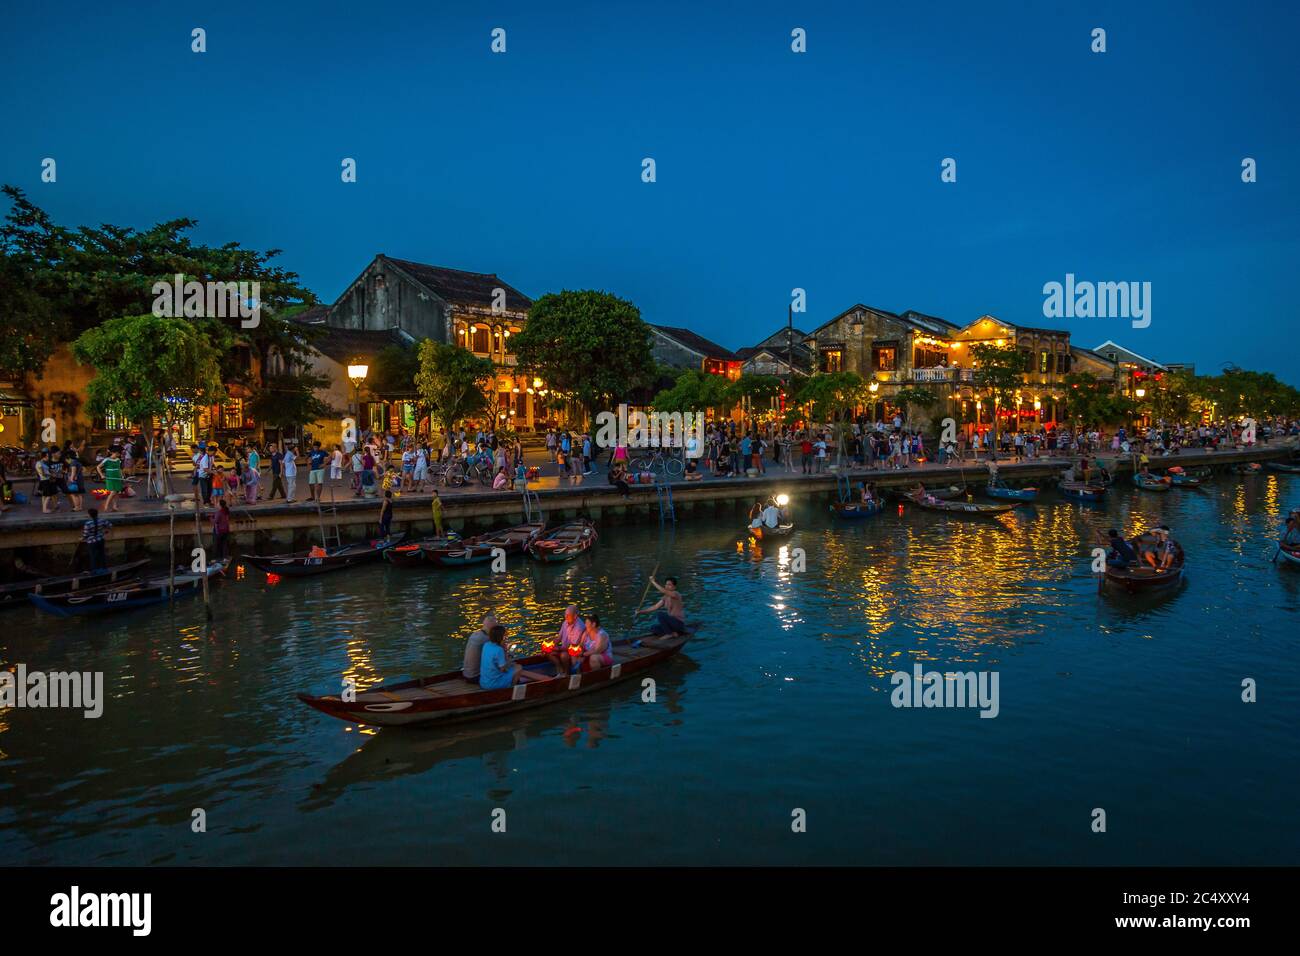 Vue sur le canal et le marché de nuit à Hoi an, Vietnam Banque D'Images